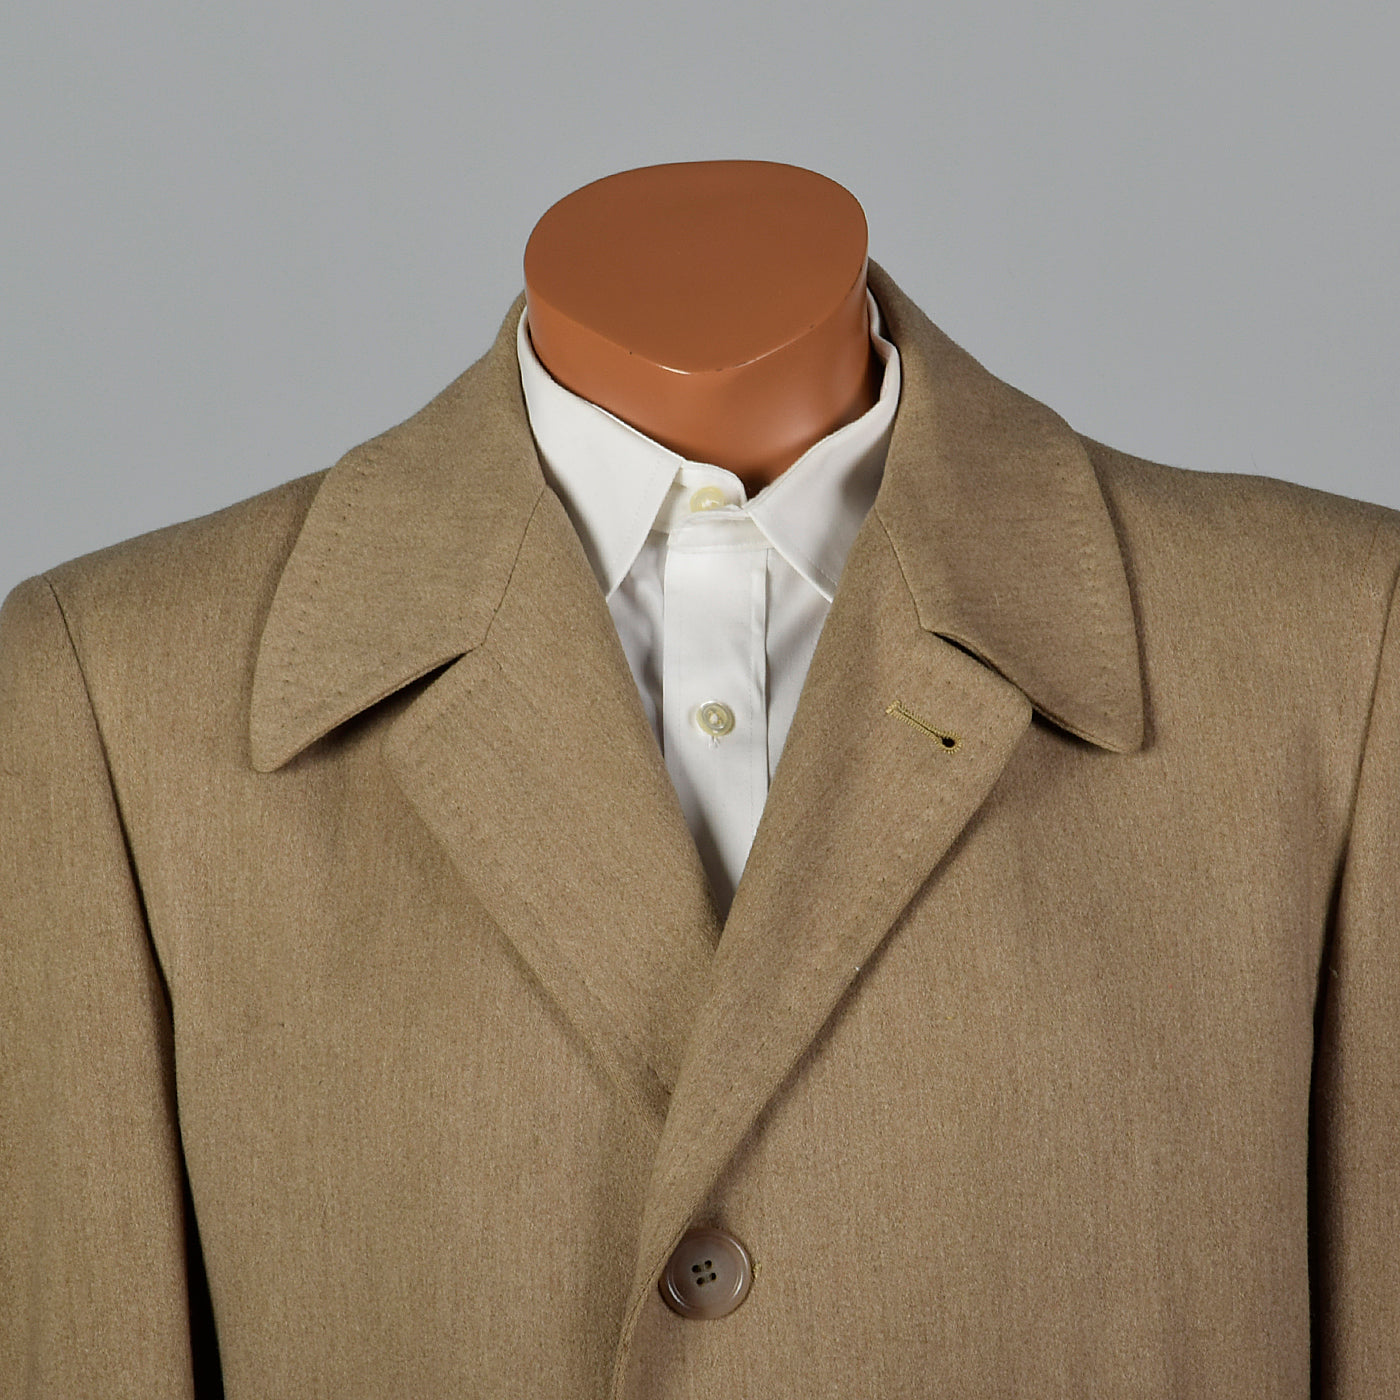 1950s Mens Tan Wool Winter Coat